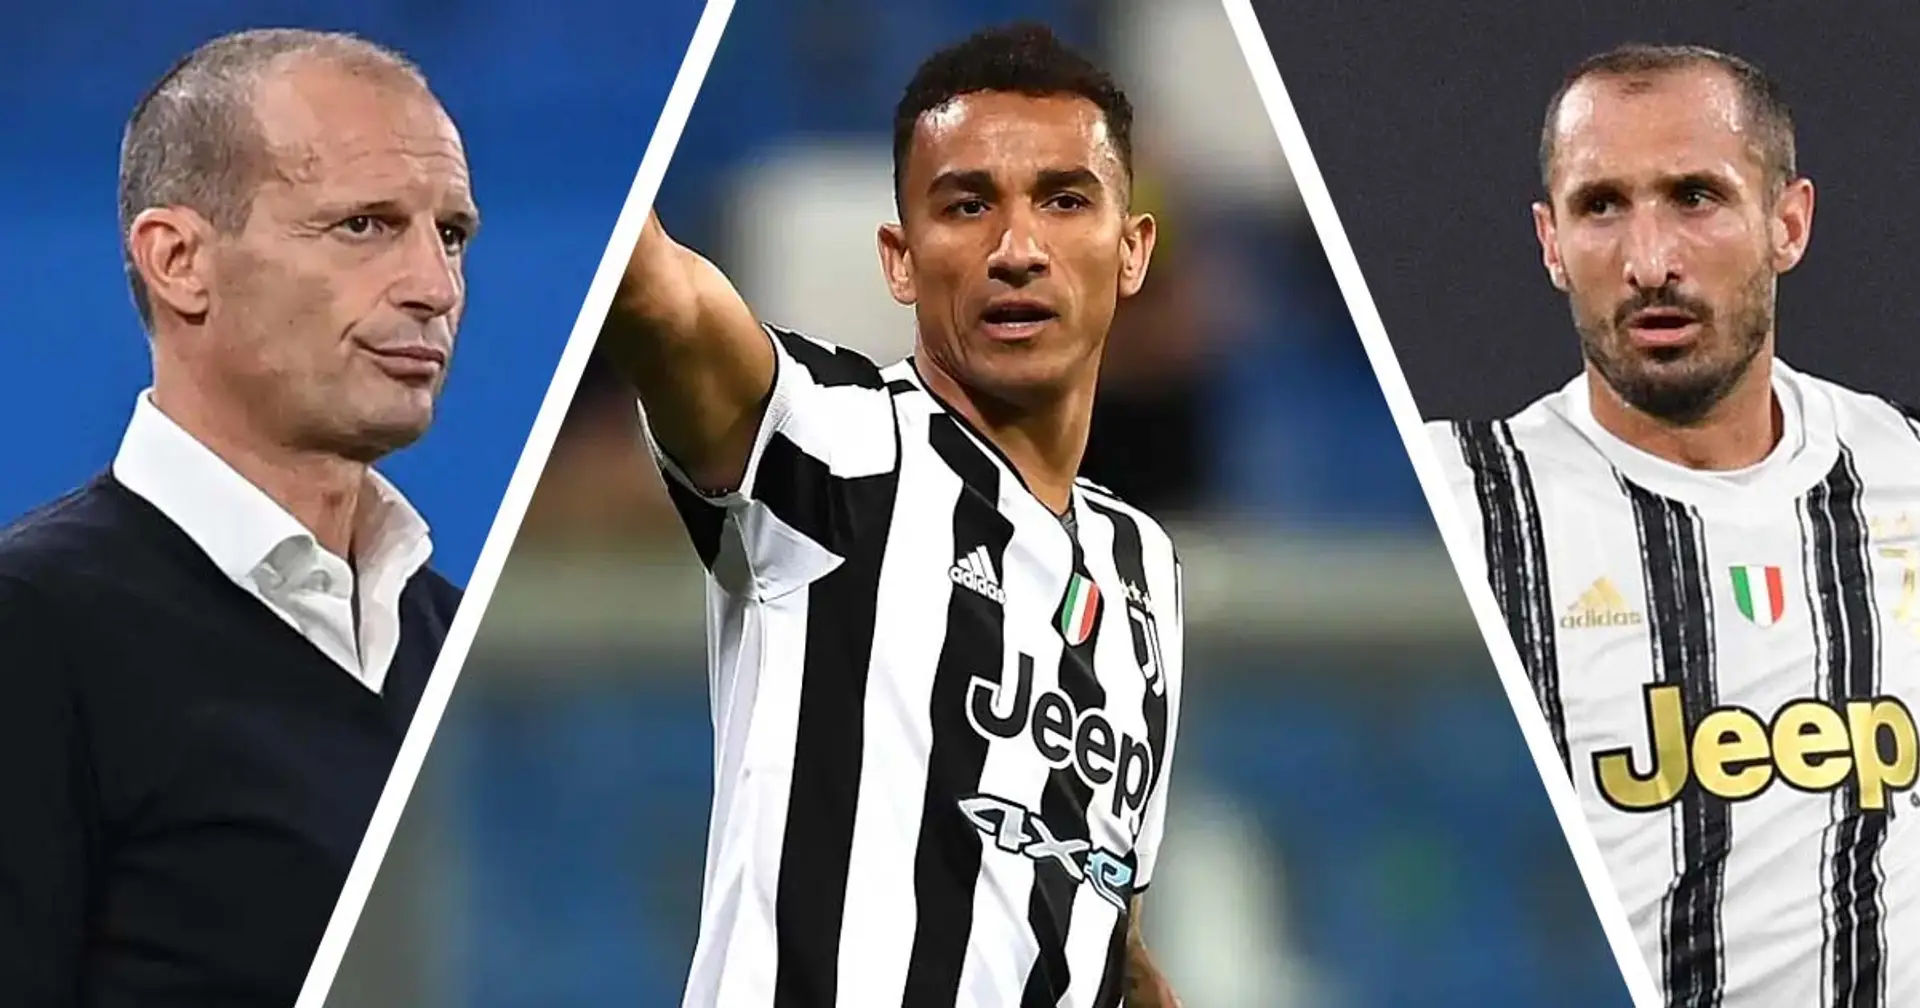 "Mi identifico nella Juventus", Danilo sottolinea il legame con i bianconeri ed esalta Chiellini e Allegri